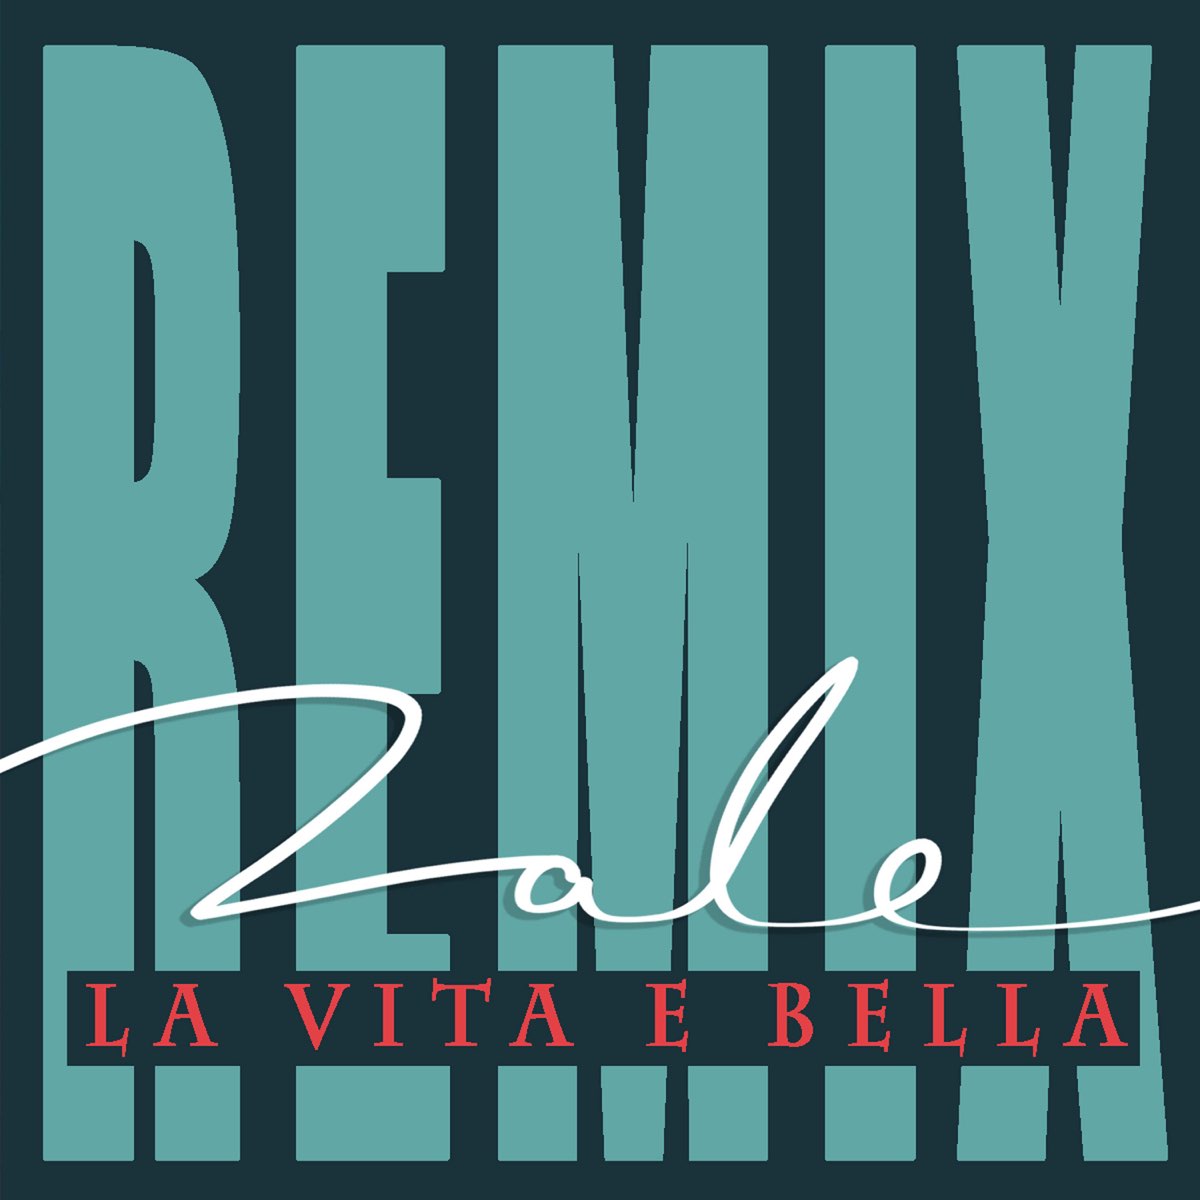 Roe pette. Обои на телефон la Vita e Bella. Bella_Remix. La Vita e Bella на обои телефона черный фон.